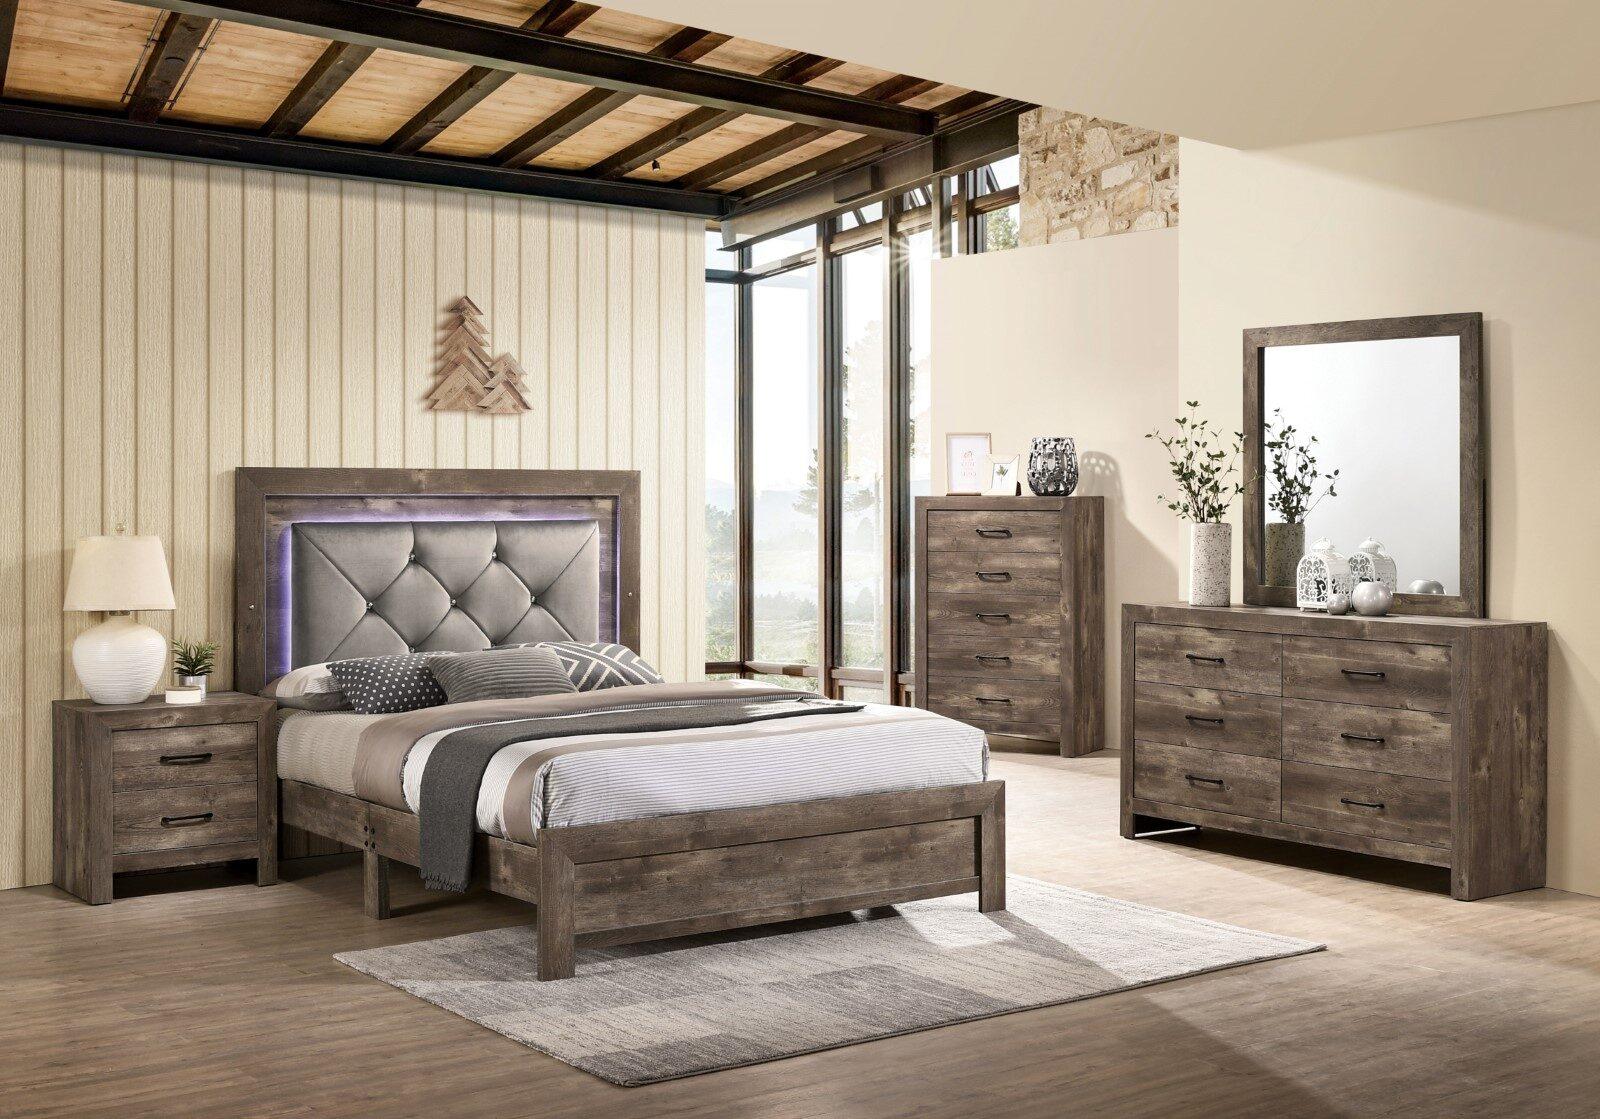 

    
Rustic Natural Tone Wood Queen Bedroom Set 5pcs Furniture of America CM7149 Larissa
